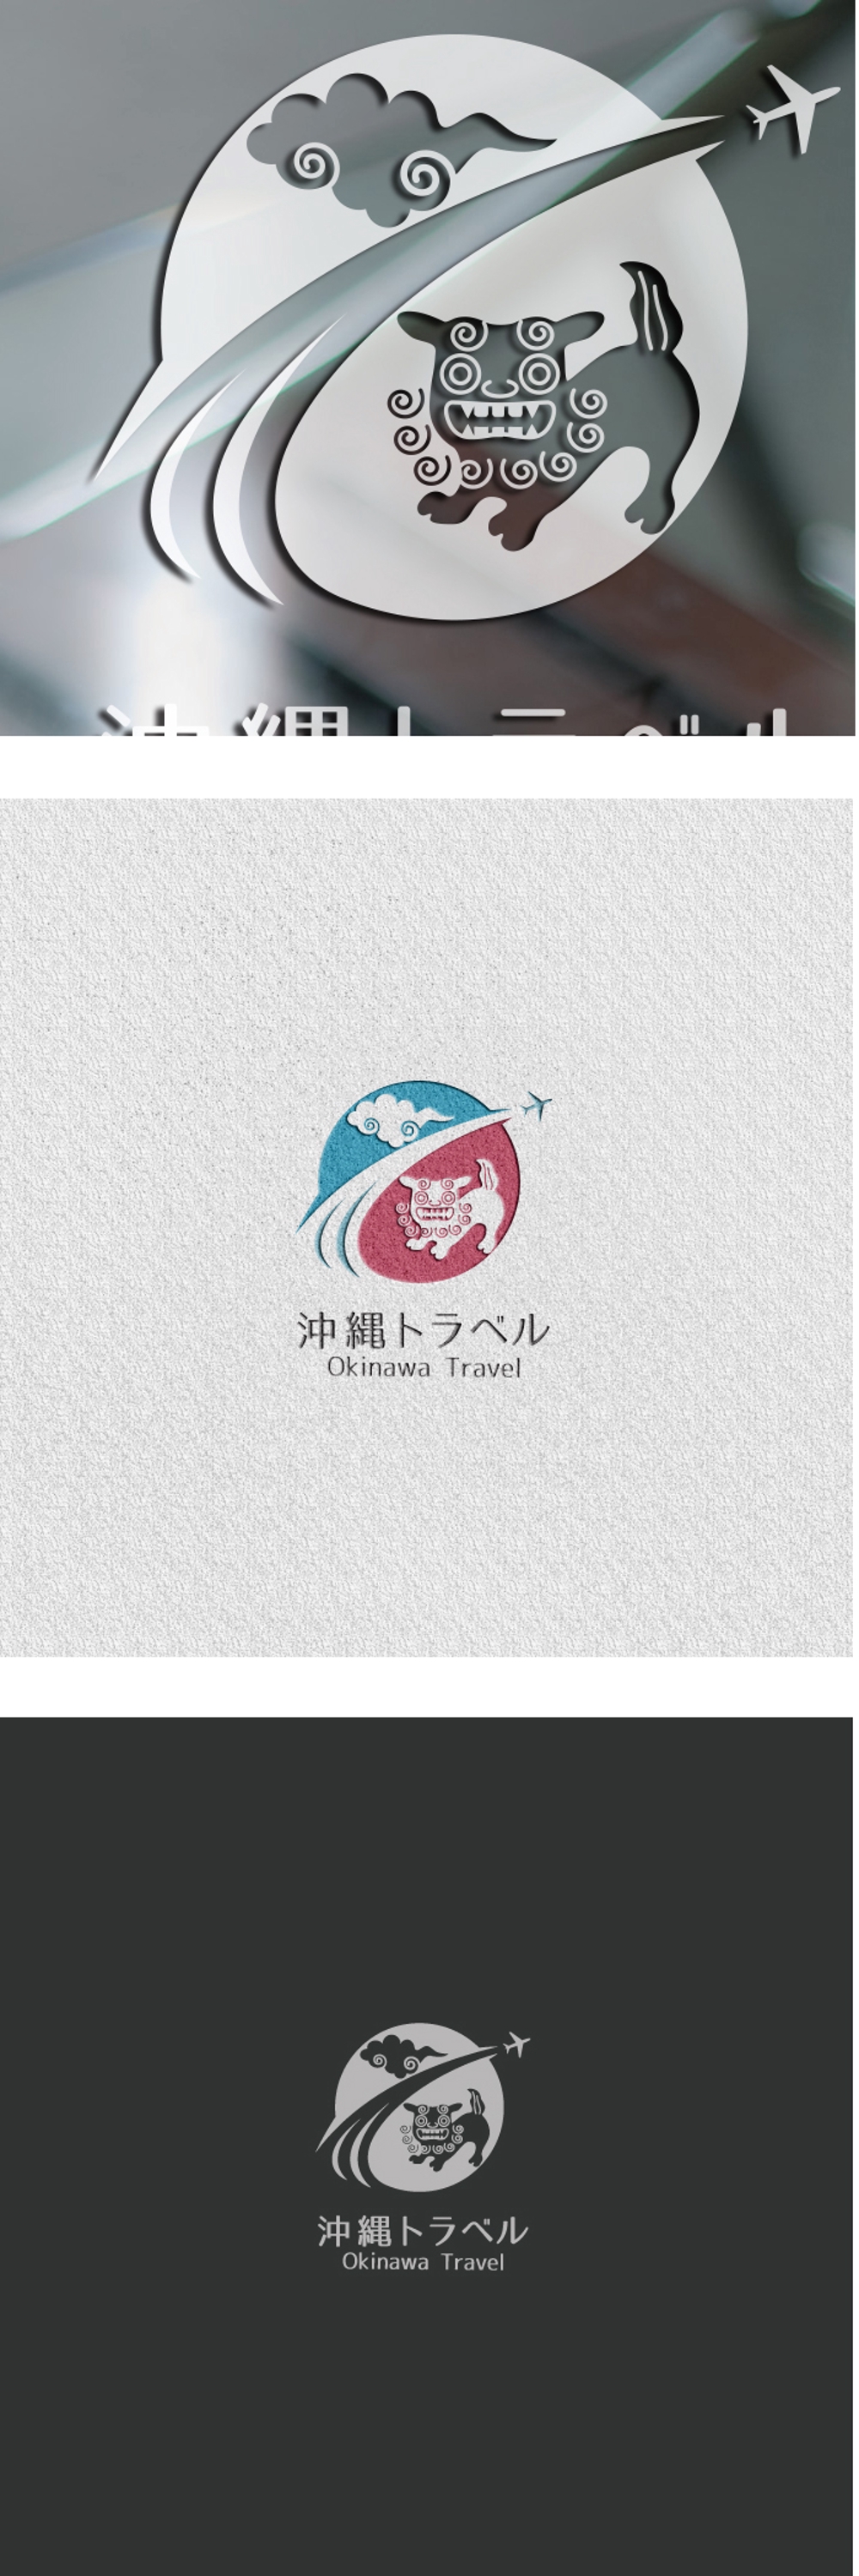 沖縄旅行に関するメディアサイトのロゴデザイン